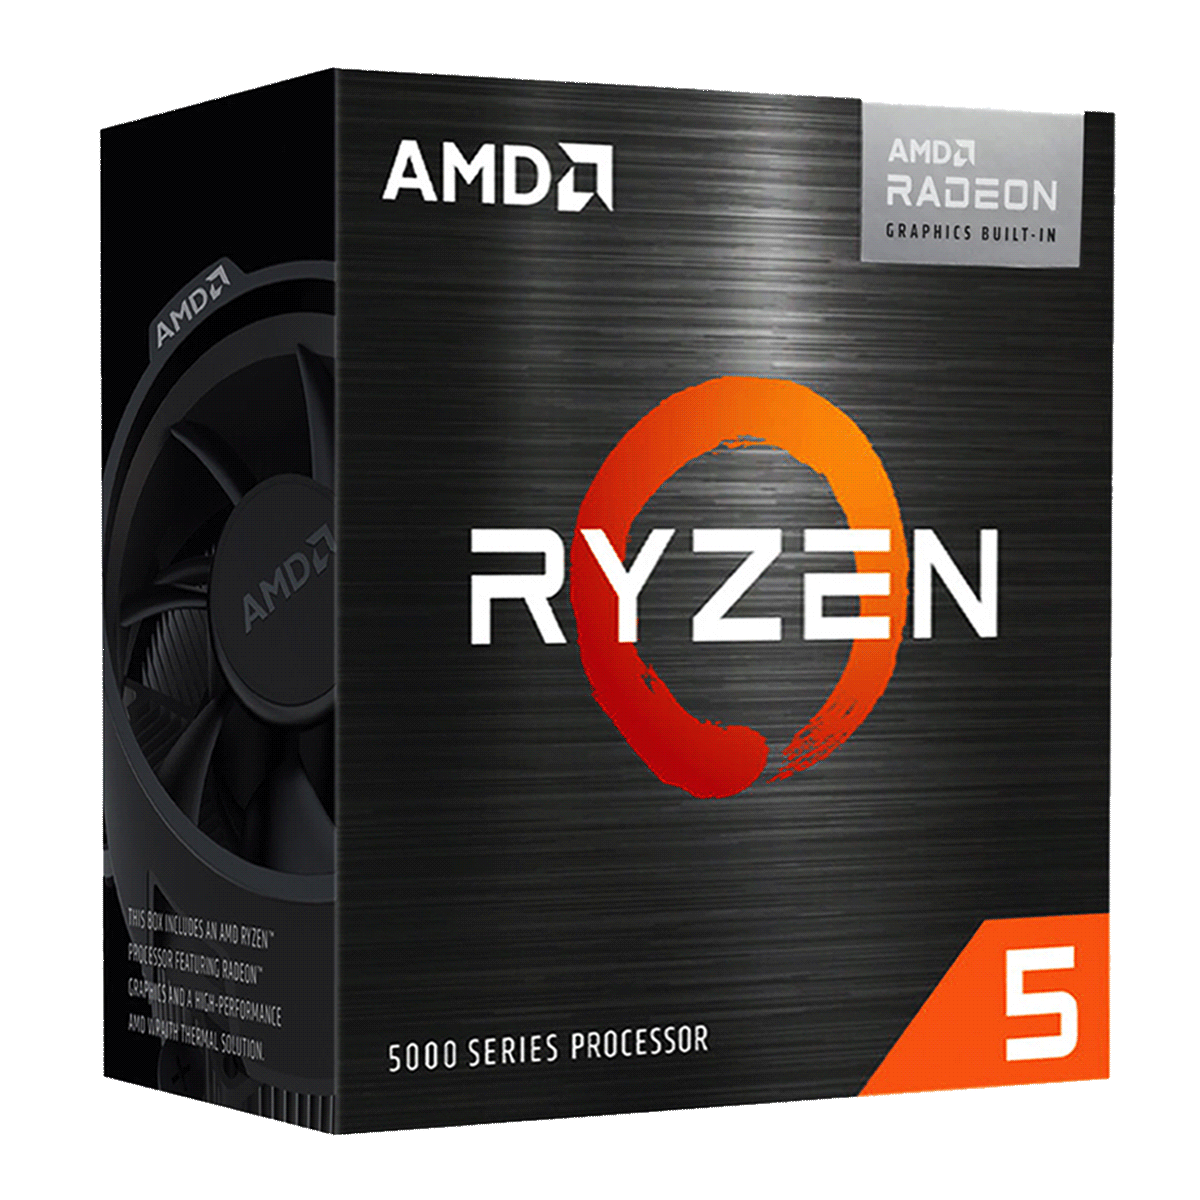 PC Bundle • AMD Ryzen 5 5700G • Asus Rog Strix B550-F Gaming • 16GB DDR4-3200 Ram